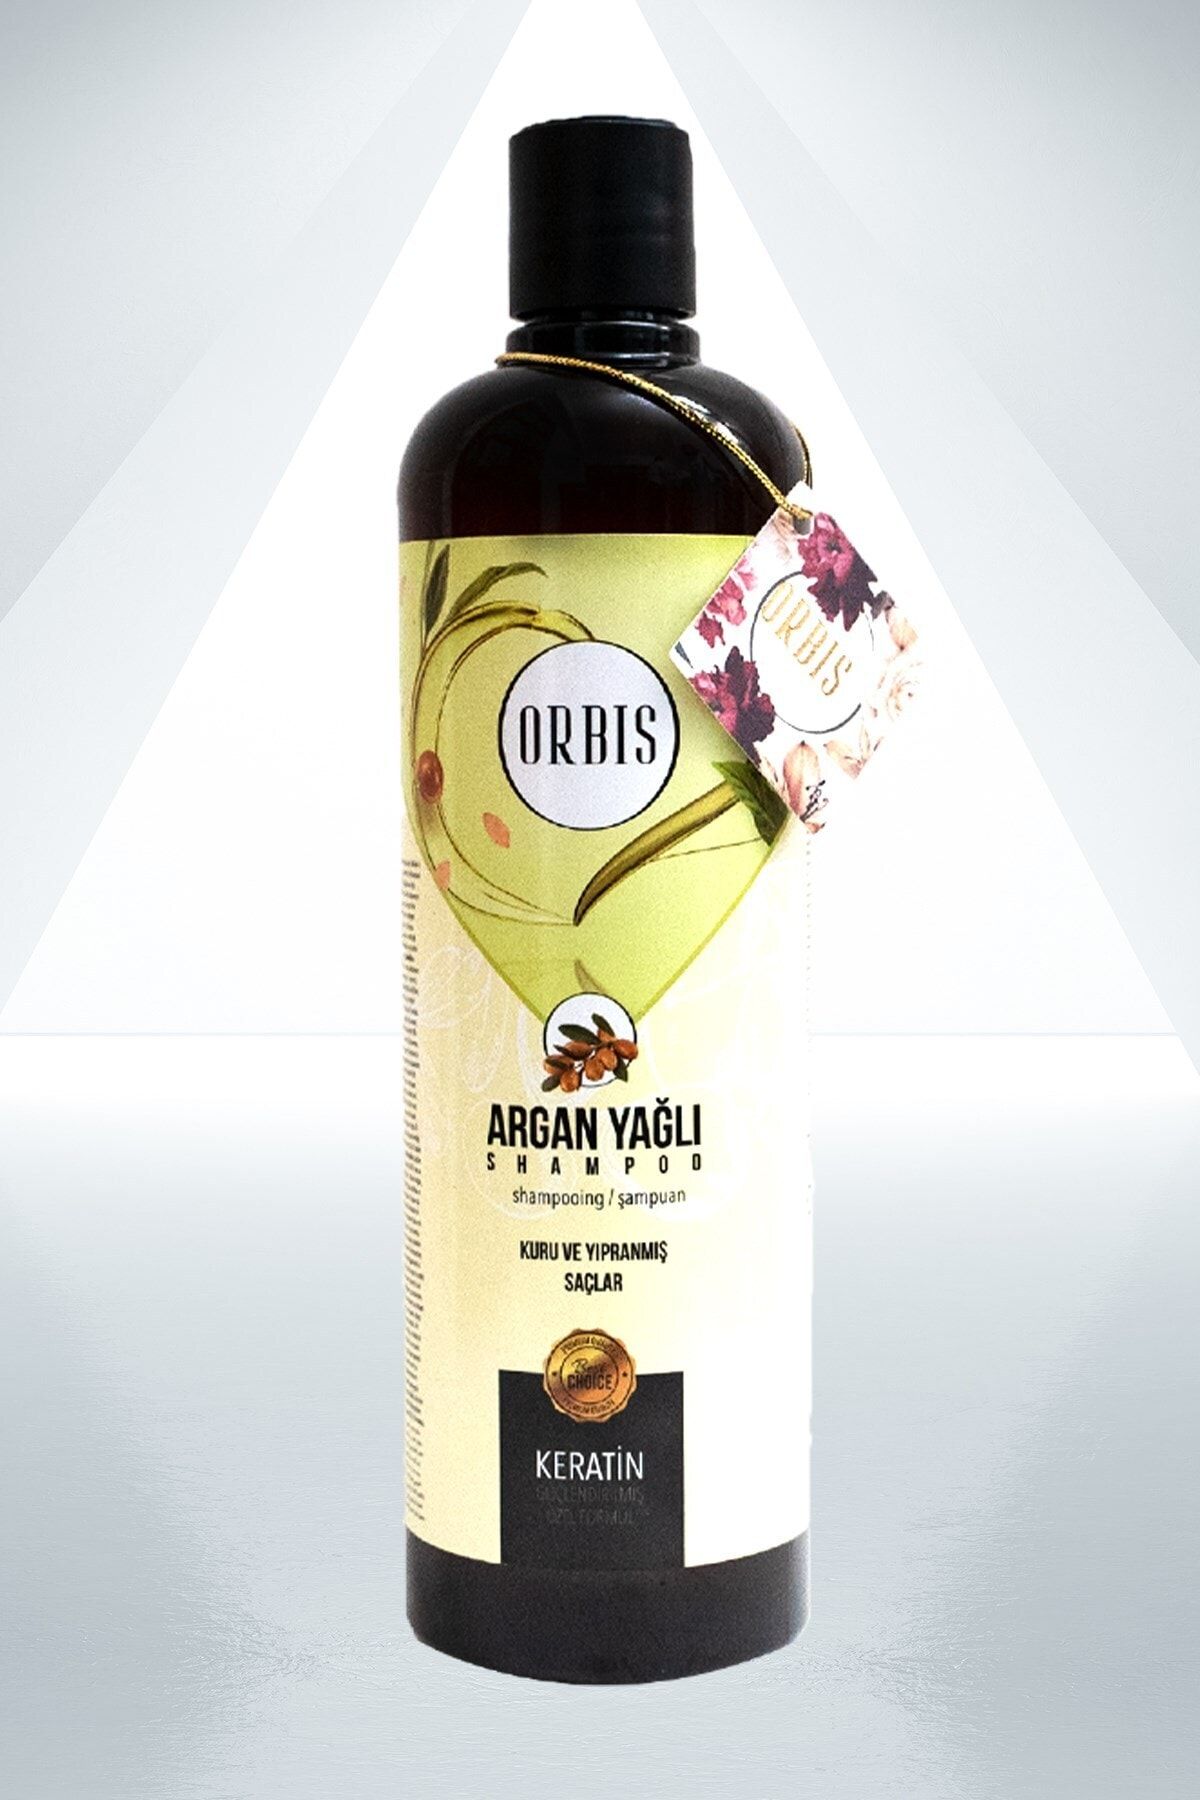 Orbis Argan Yağlı Şampuan